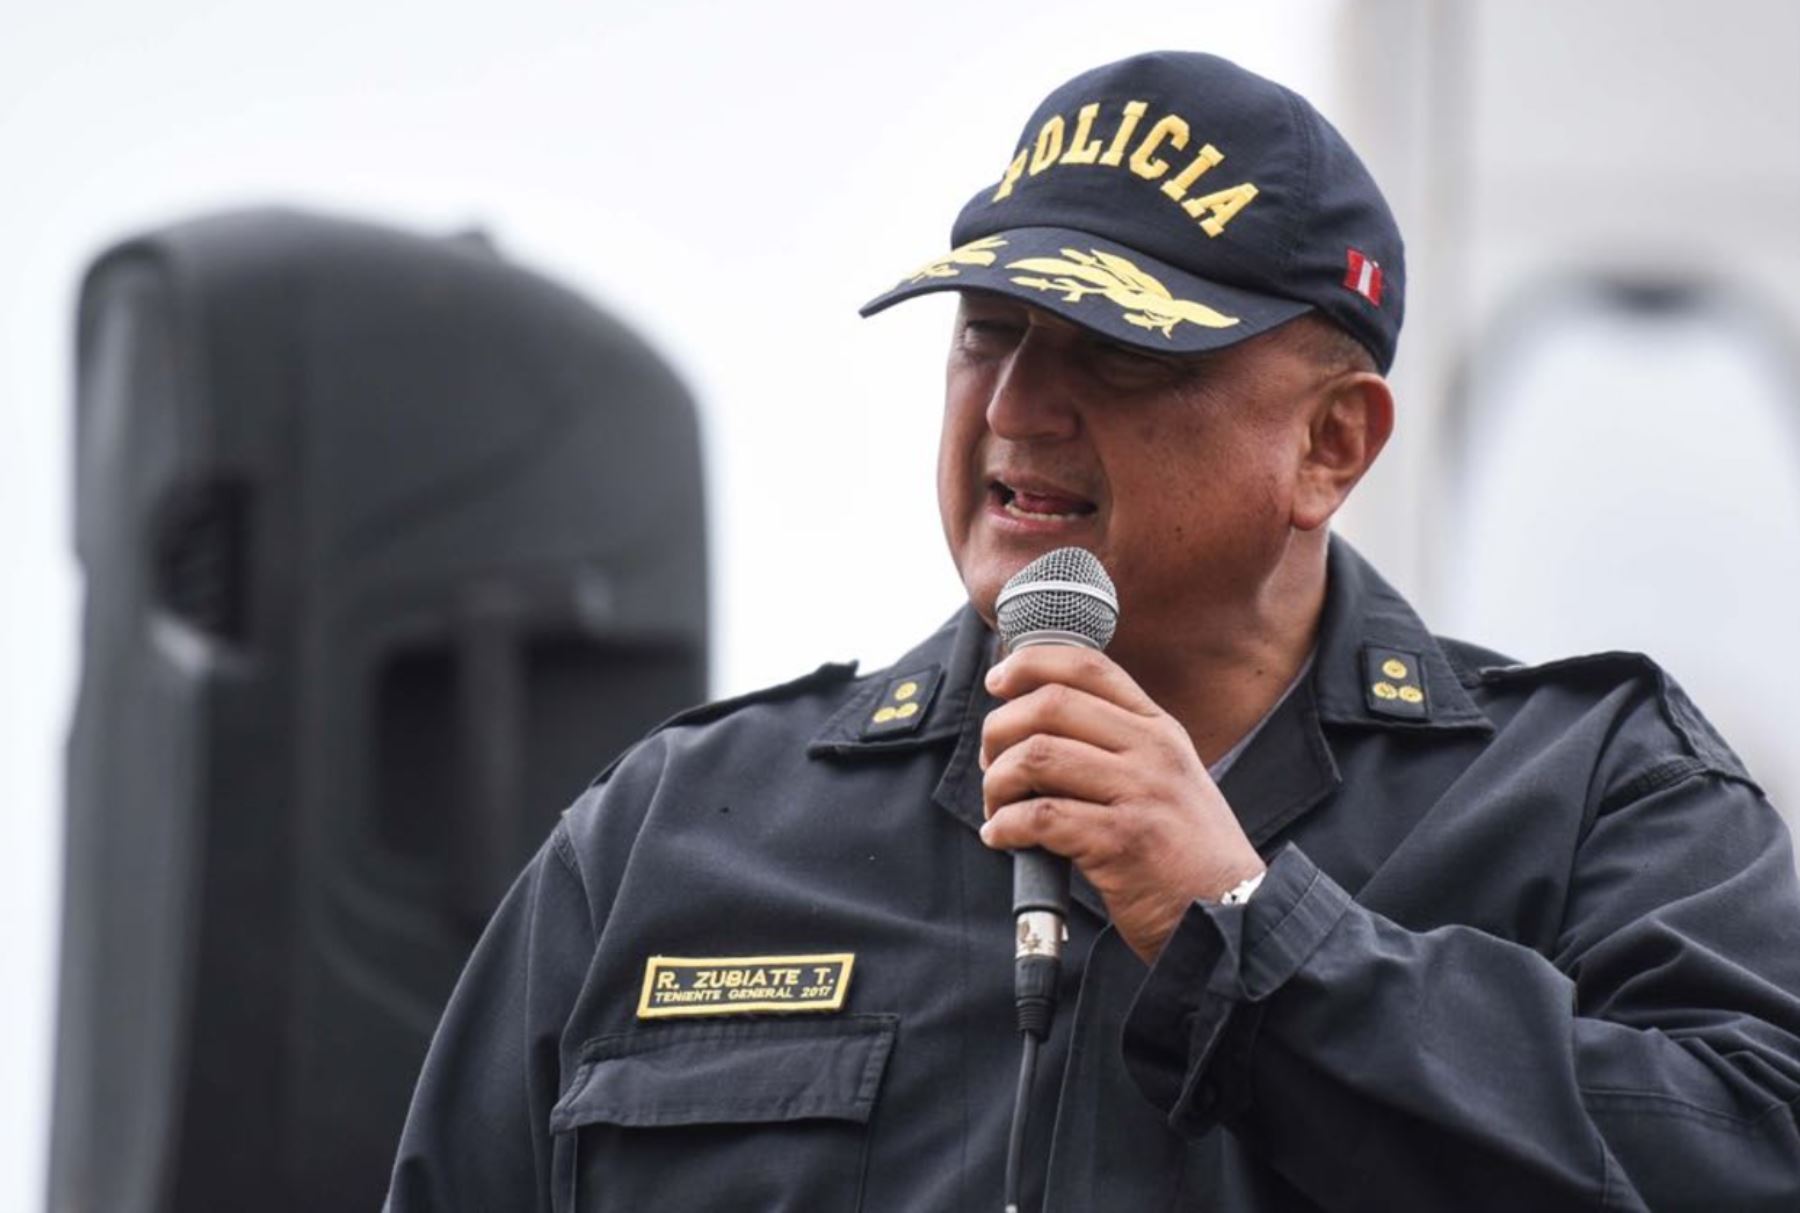 Nuevo Director de la Policía Nacional Richard Douglas Zubiate Talledo